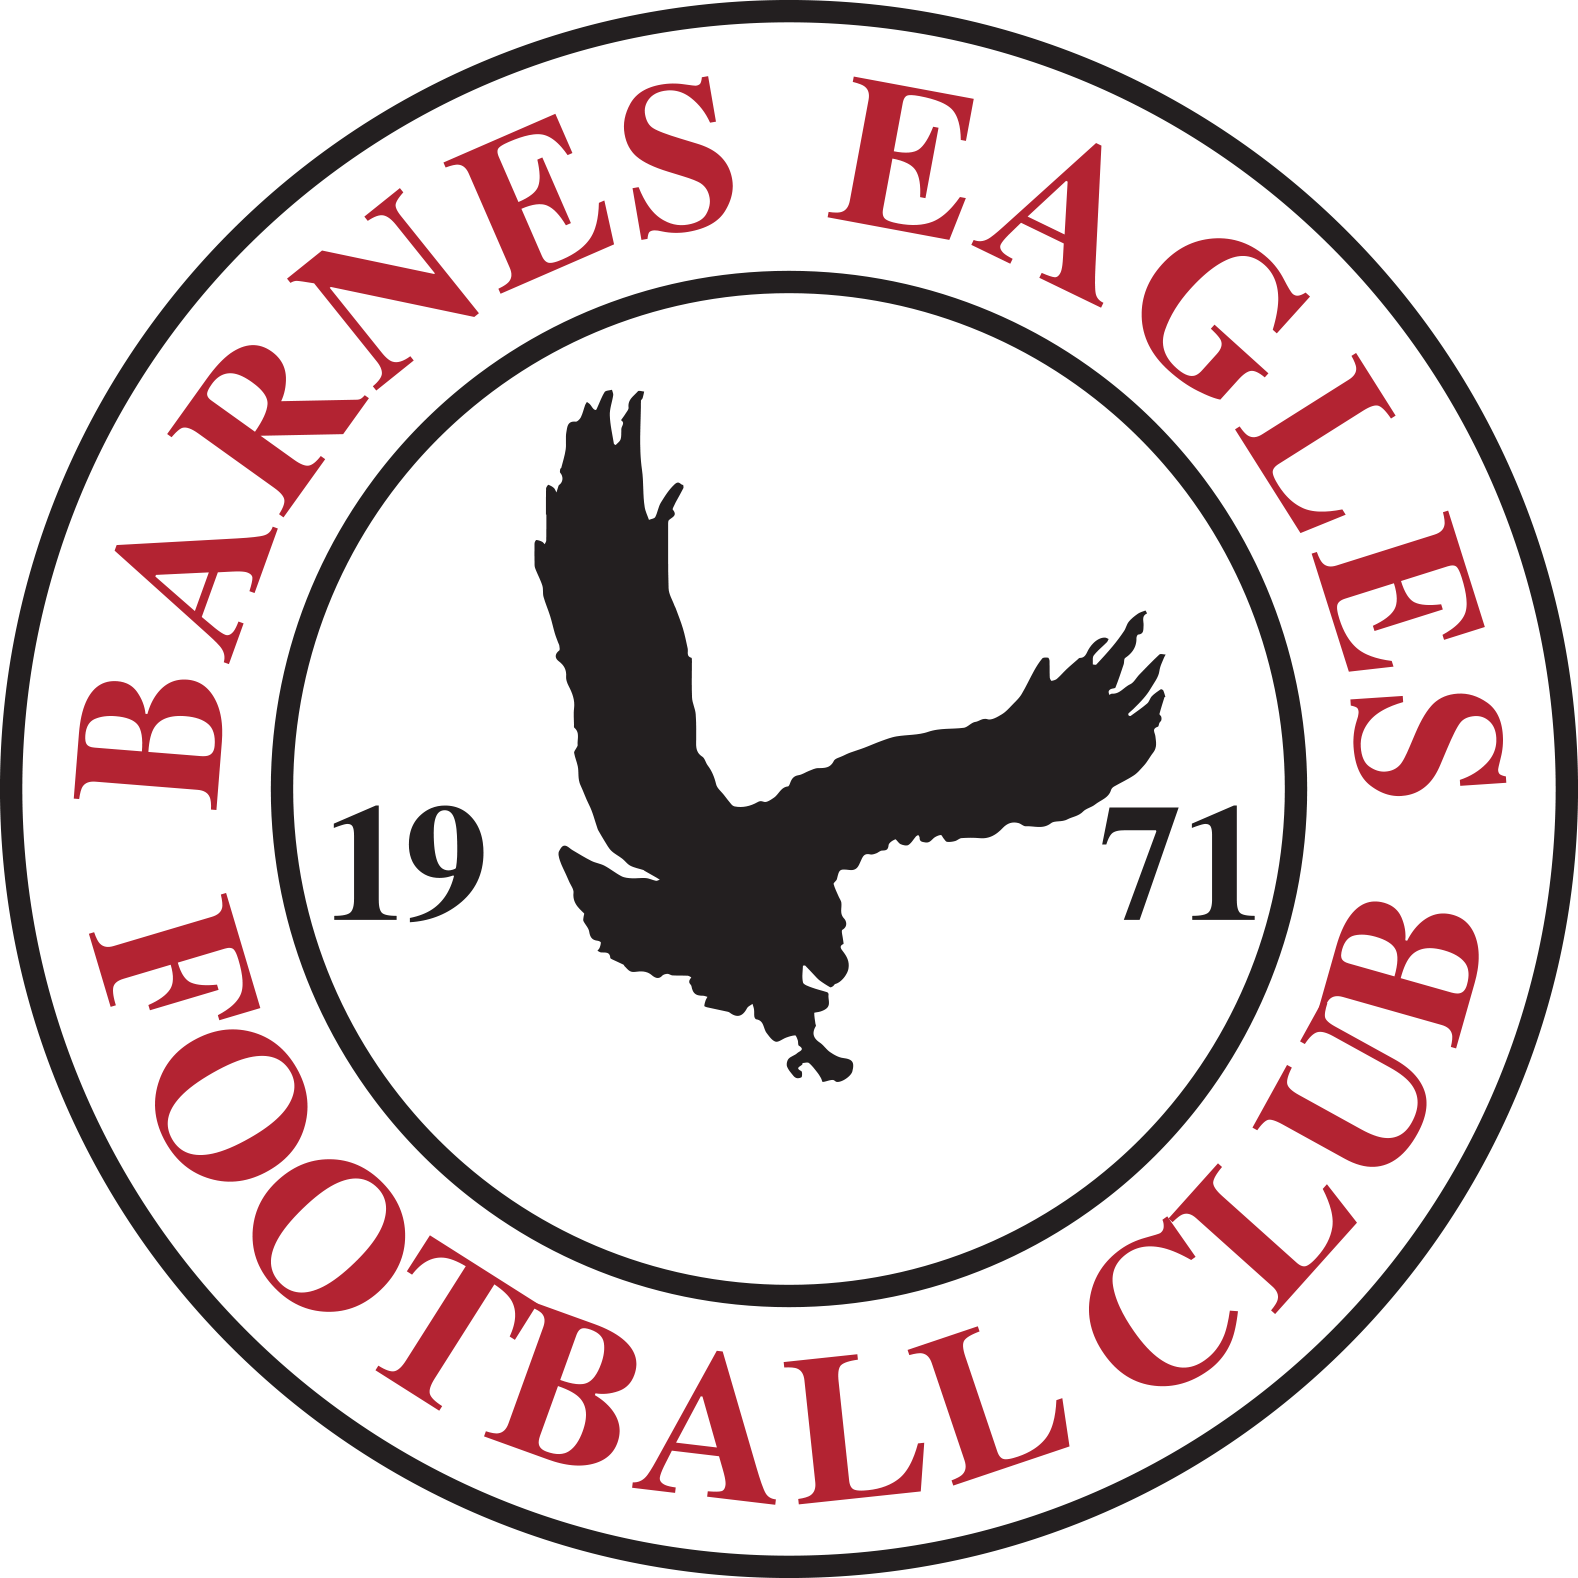 Barnes Eagles FC